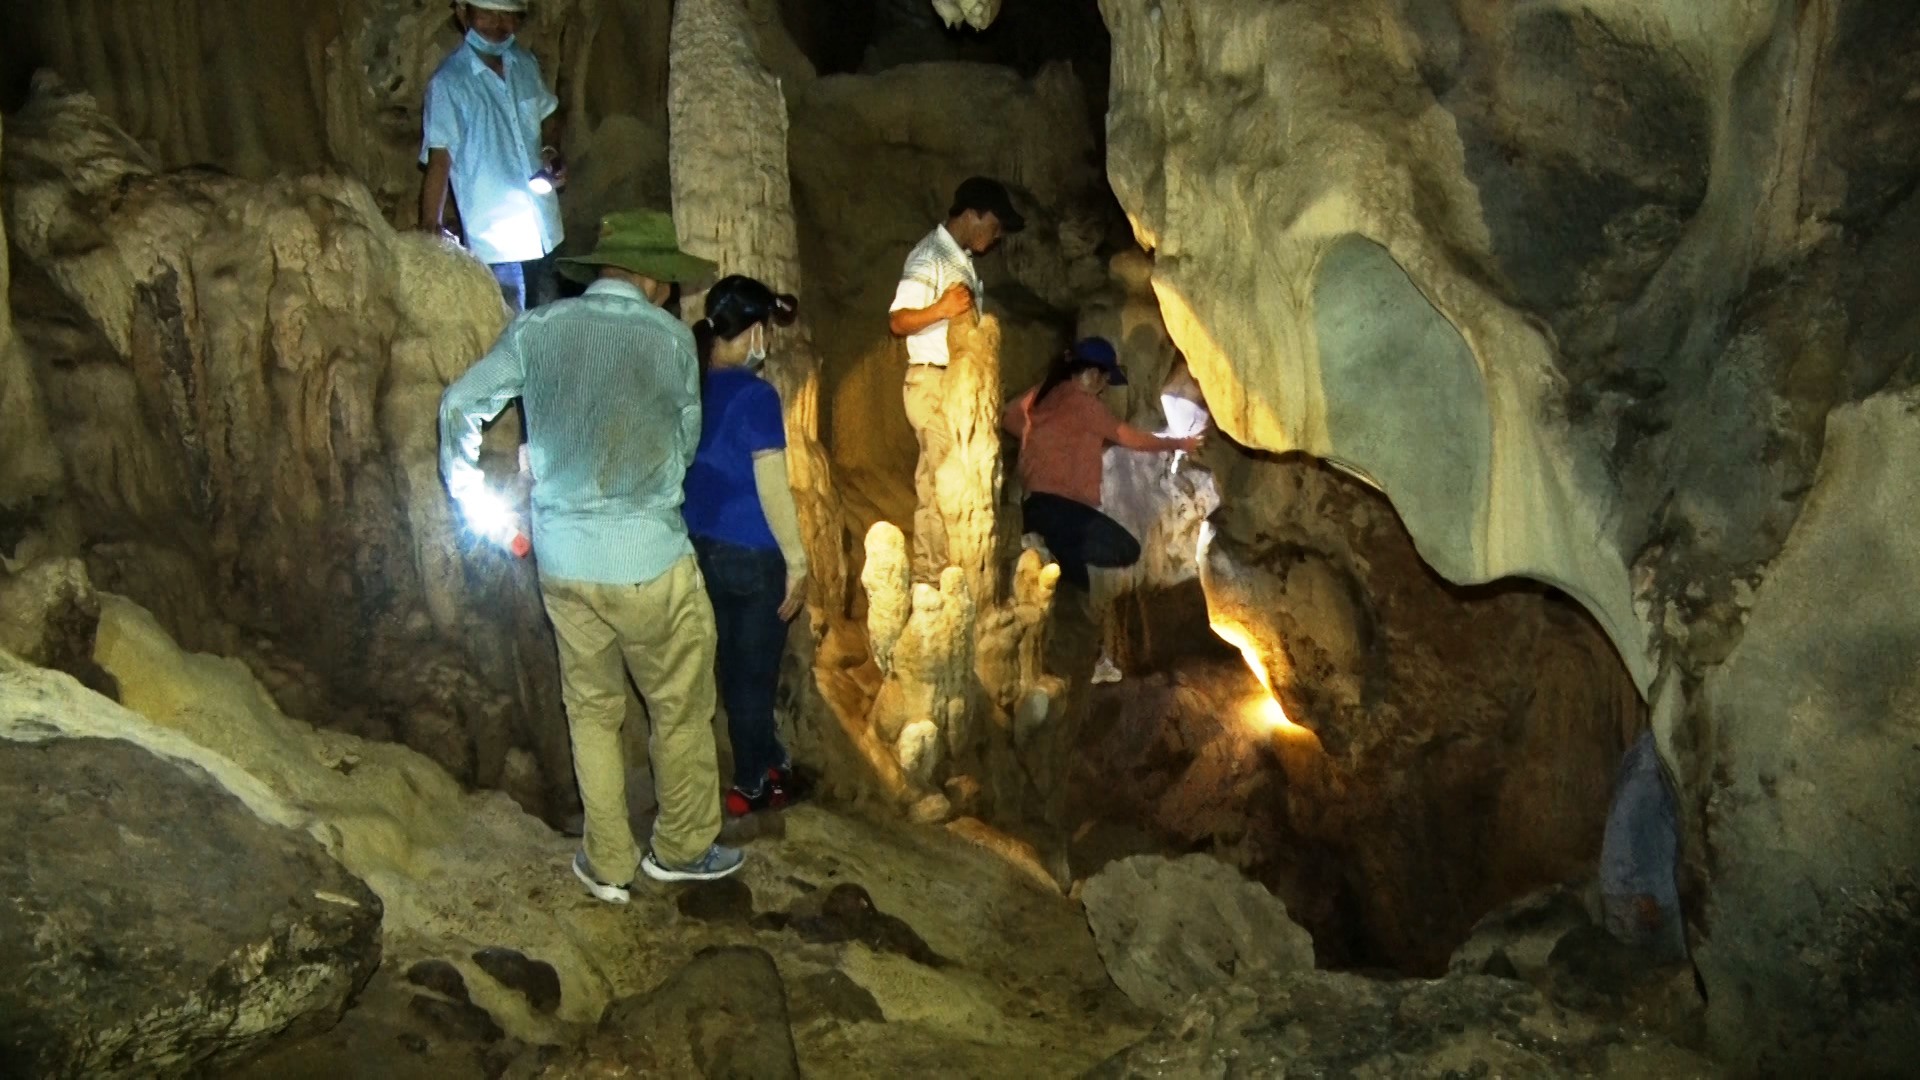 Đoàn công tác Sở VH-TT-DL và UBND huyện Hướng Hóa khảo sát hang động tại thôn Trỉa, xã Hướng Sơn để bảo tồn danh thắng này và đánh giá tiềm năng phát triển du lịch sinh thái ở đây- Ảnh: Đ.V